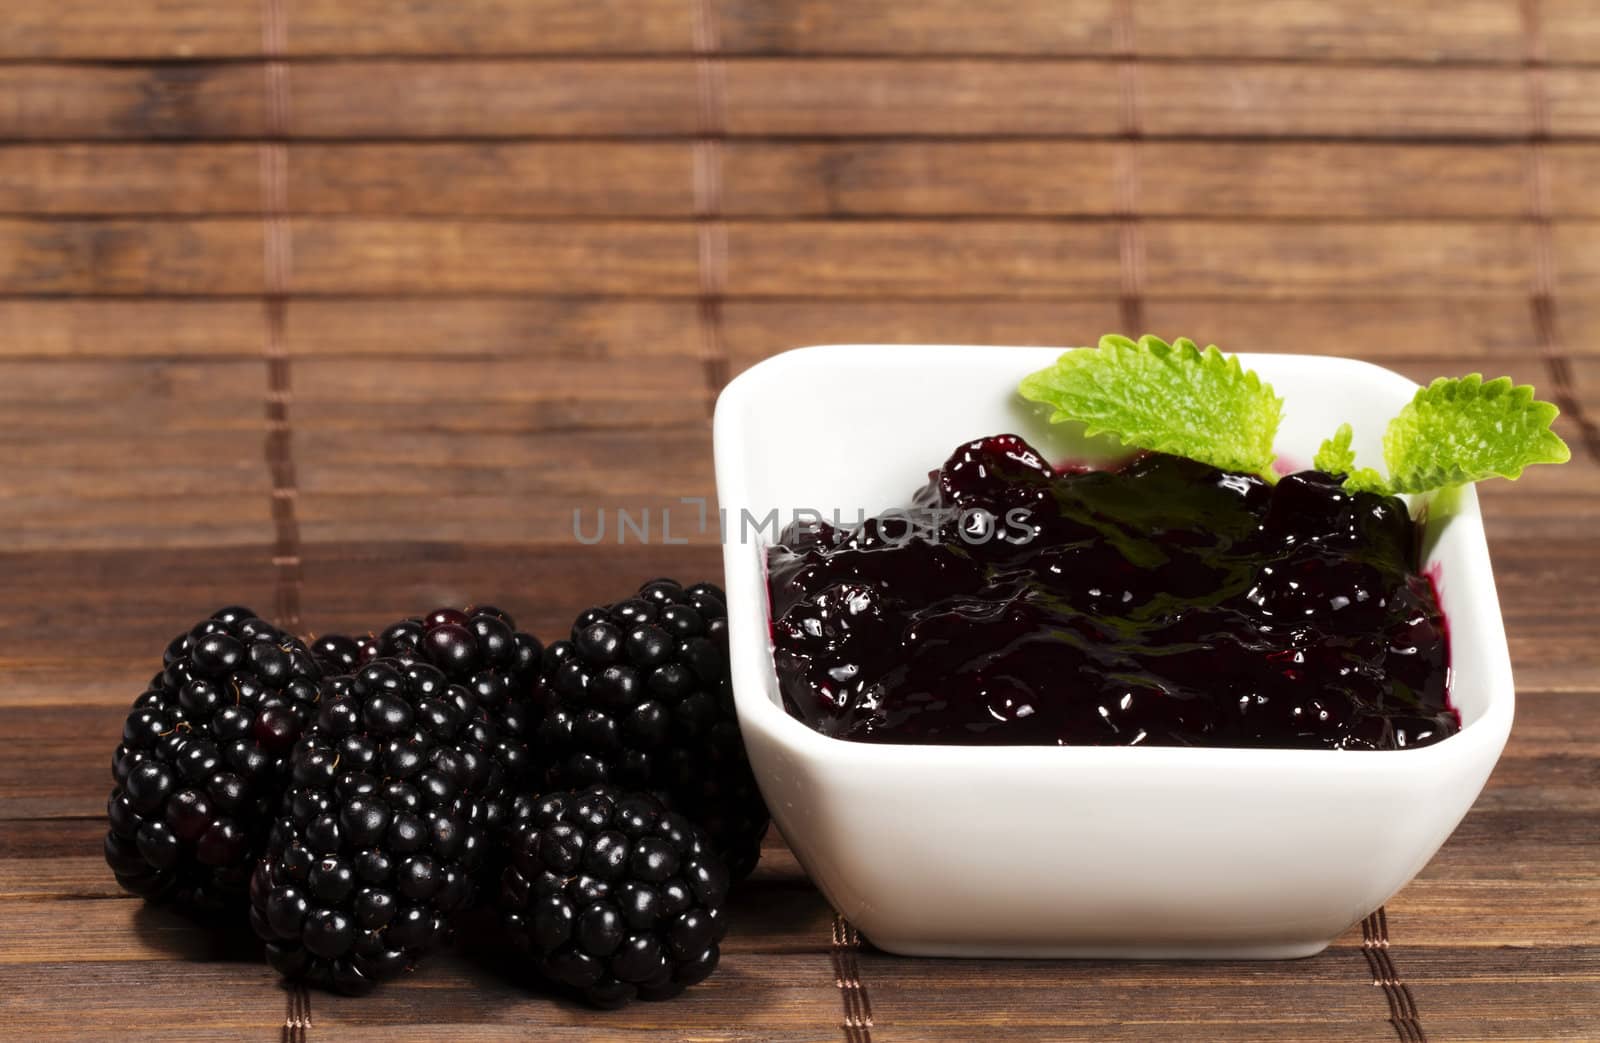 blackberry jam and blackberries by RobStark